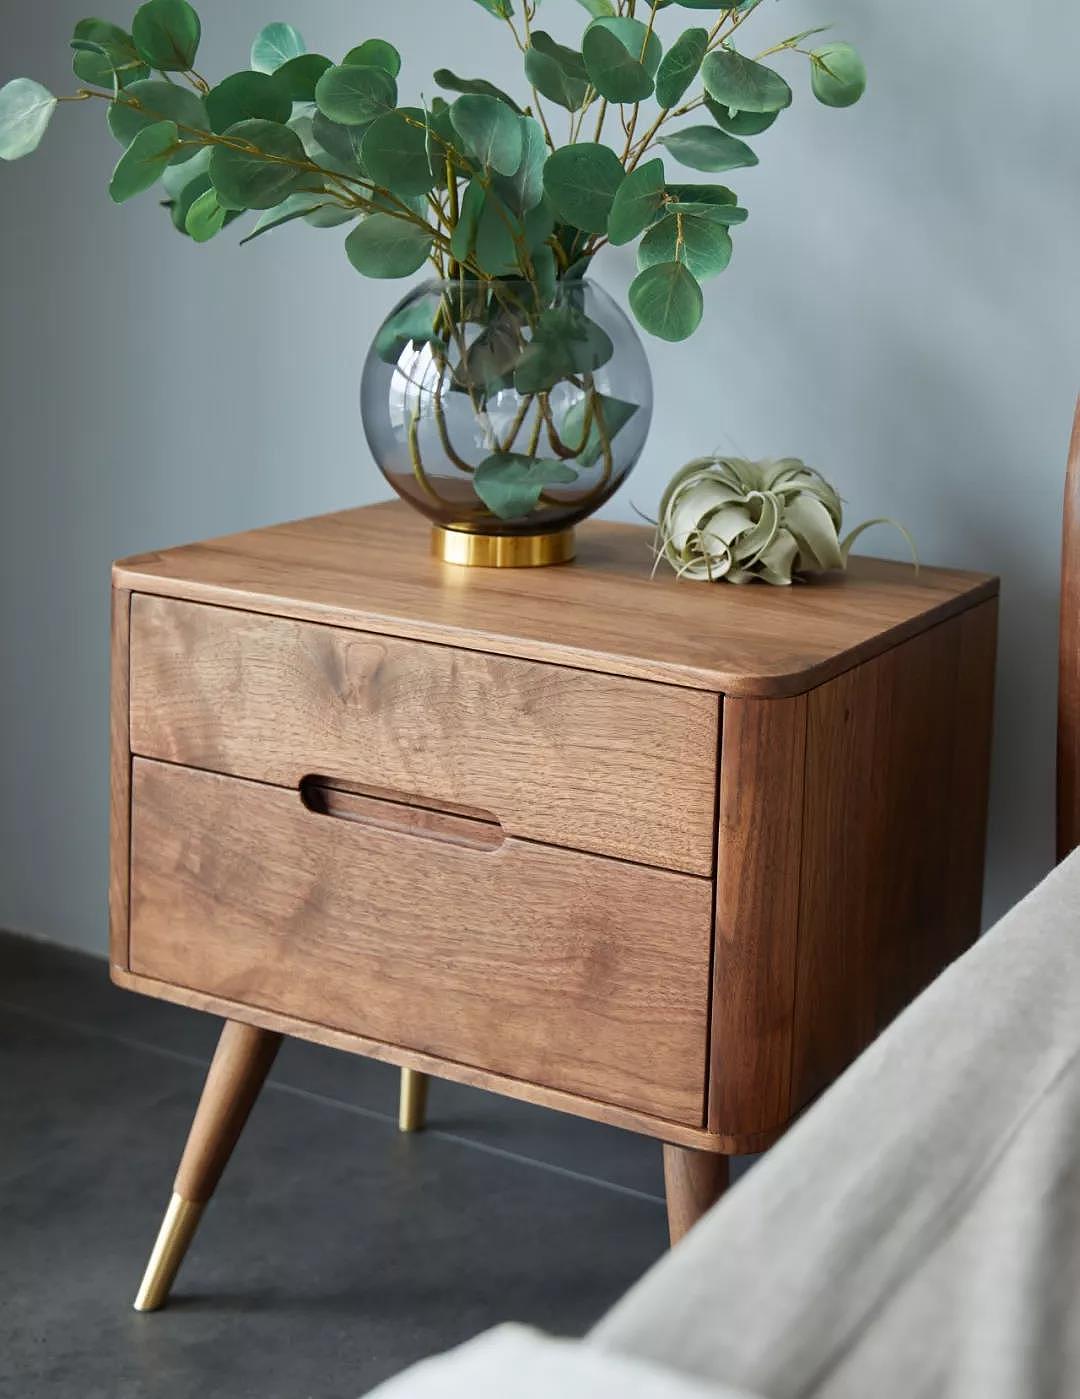 简易床头柜全木质现代简约卧室储物收纳柜床头置物网红床边小柜子-阿里巴巴